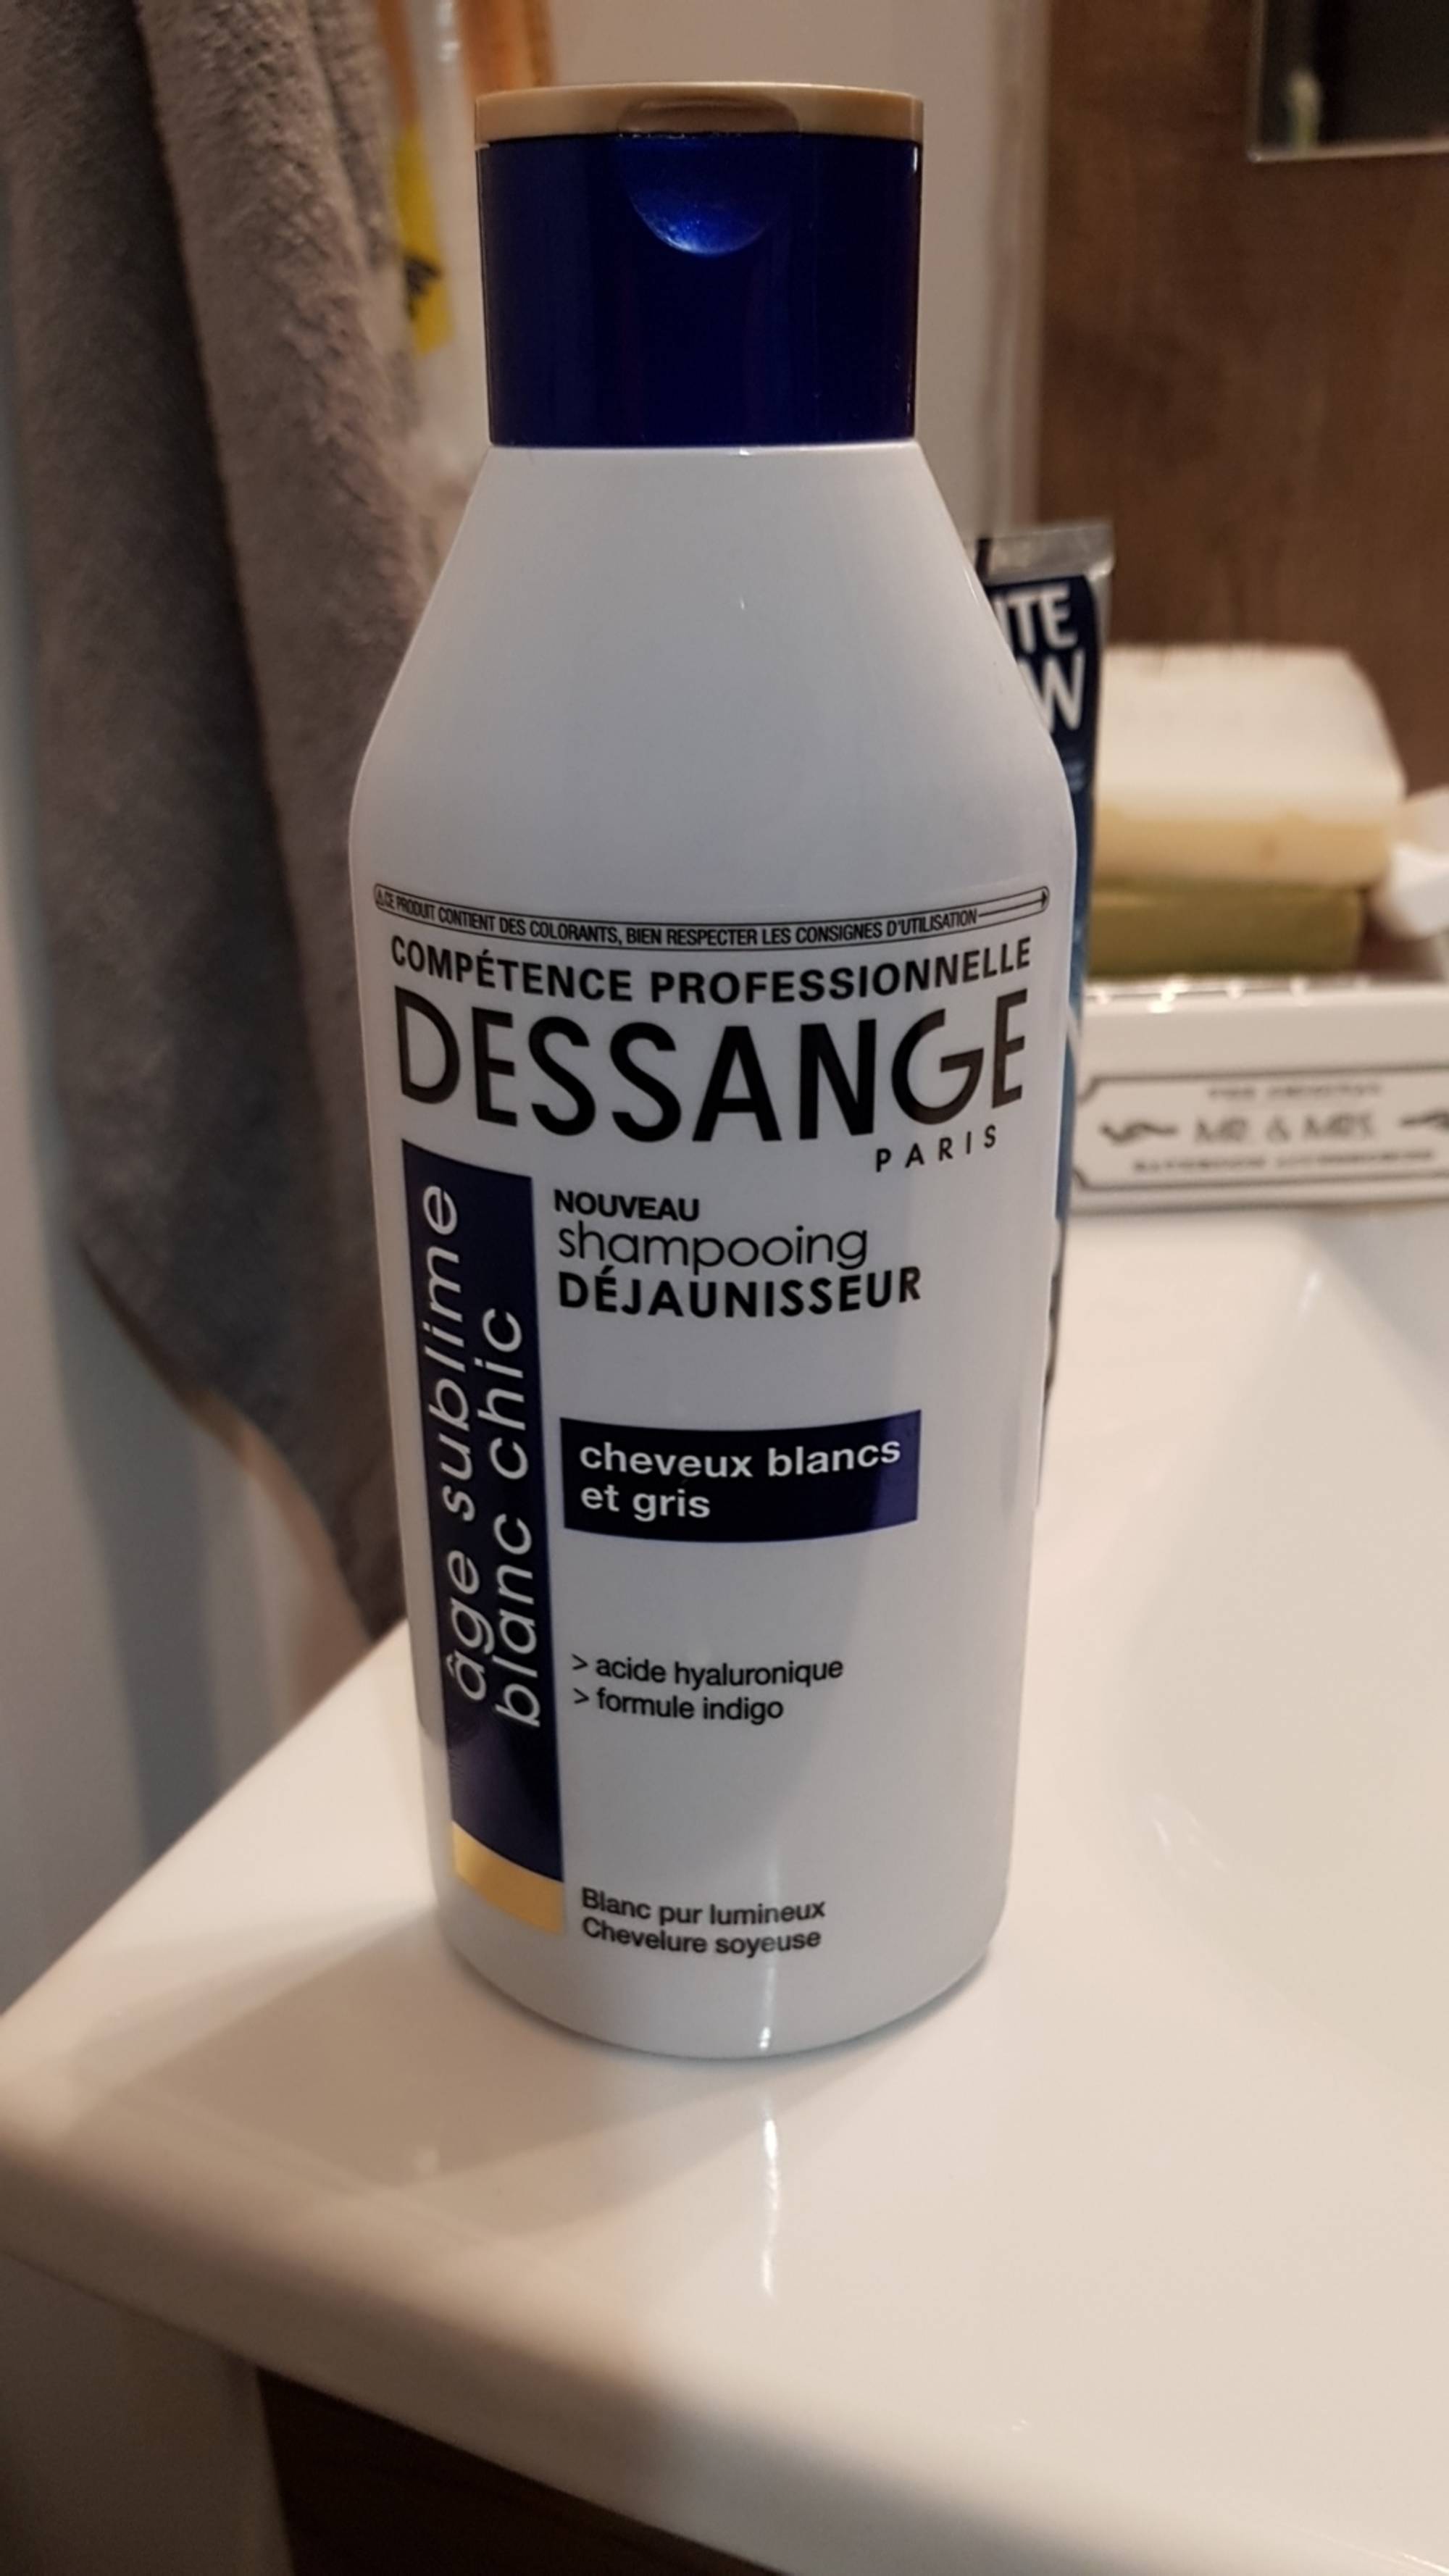 DESSANGE PARIS - Age sublime blanc chic - Shampooing déjaunisseur